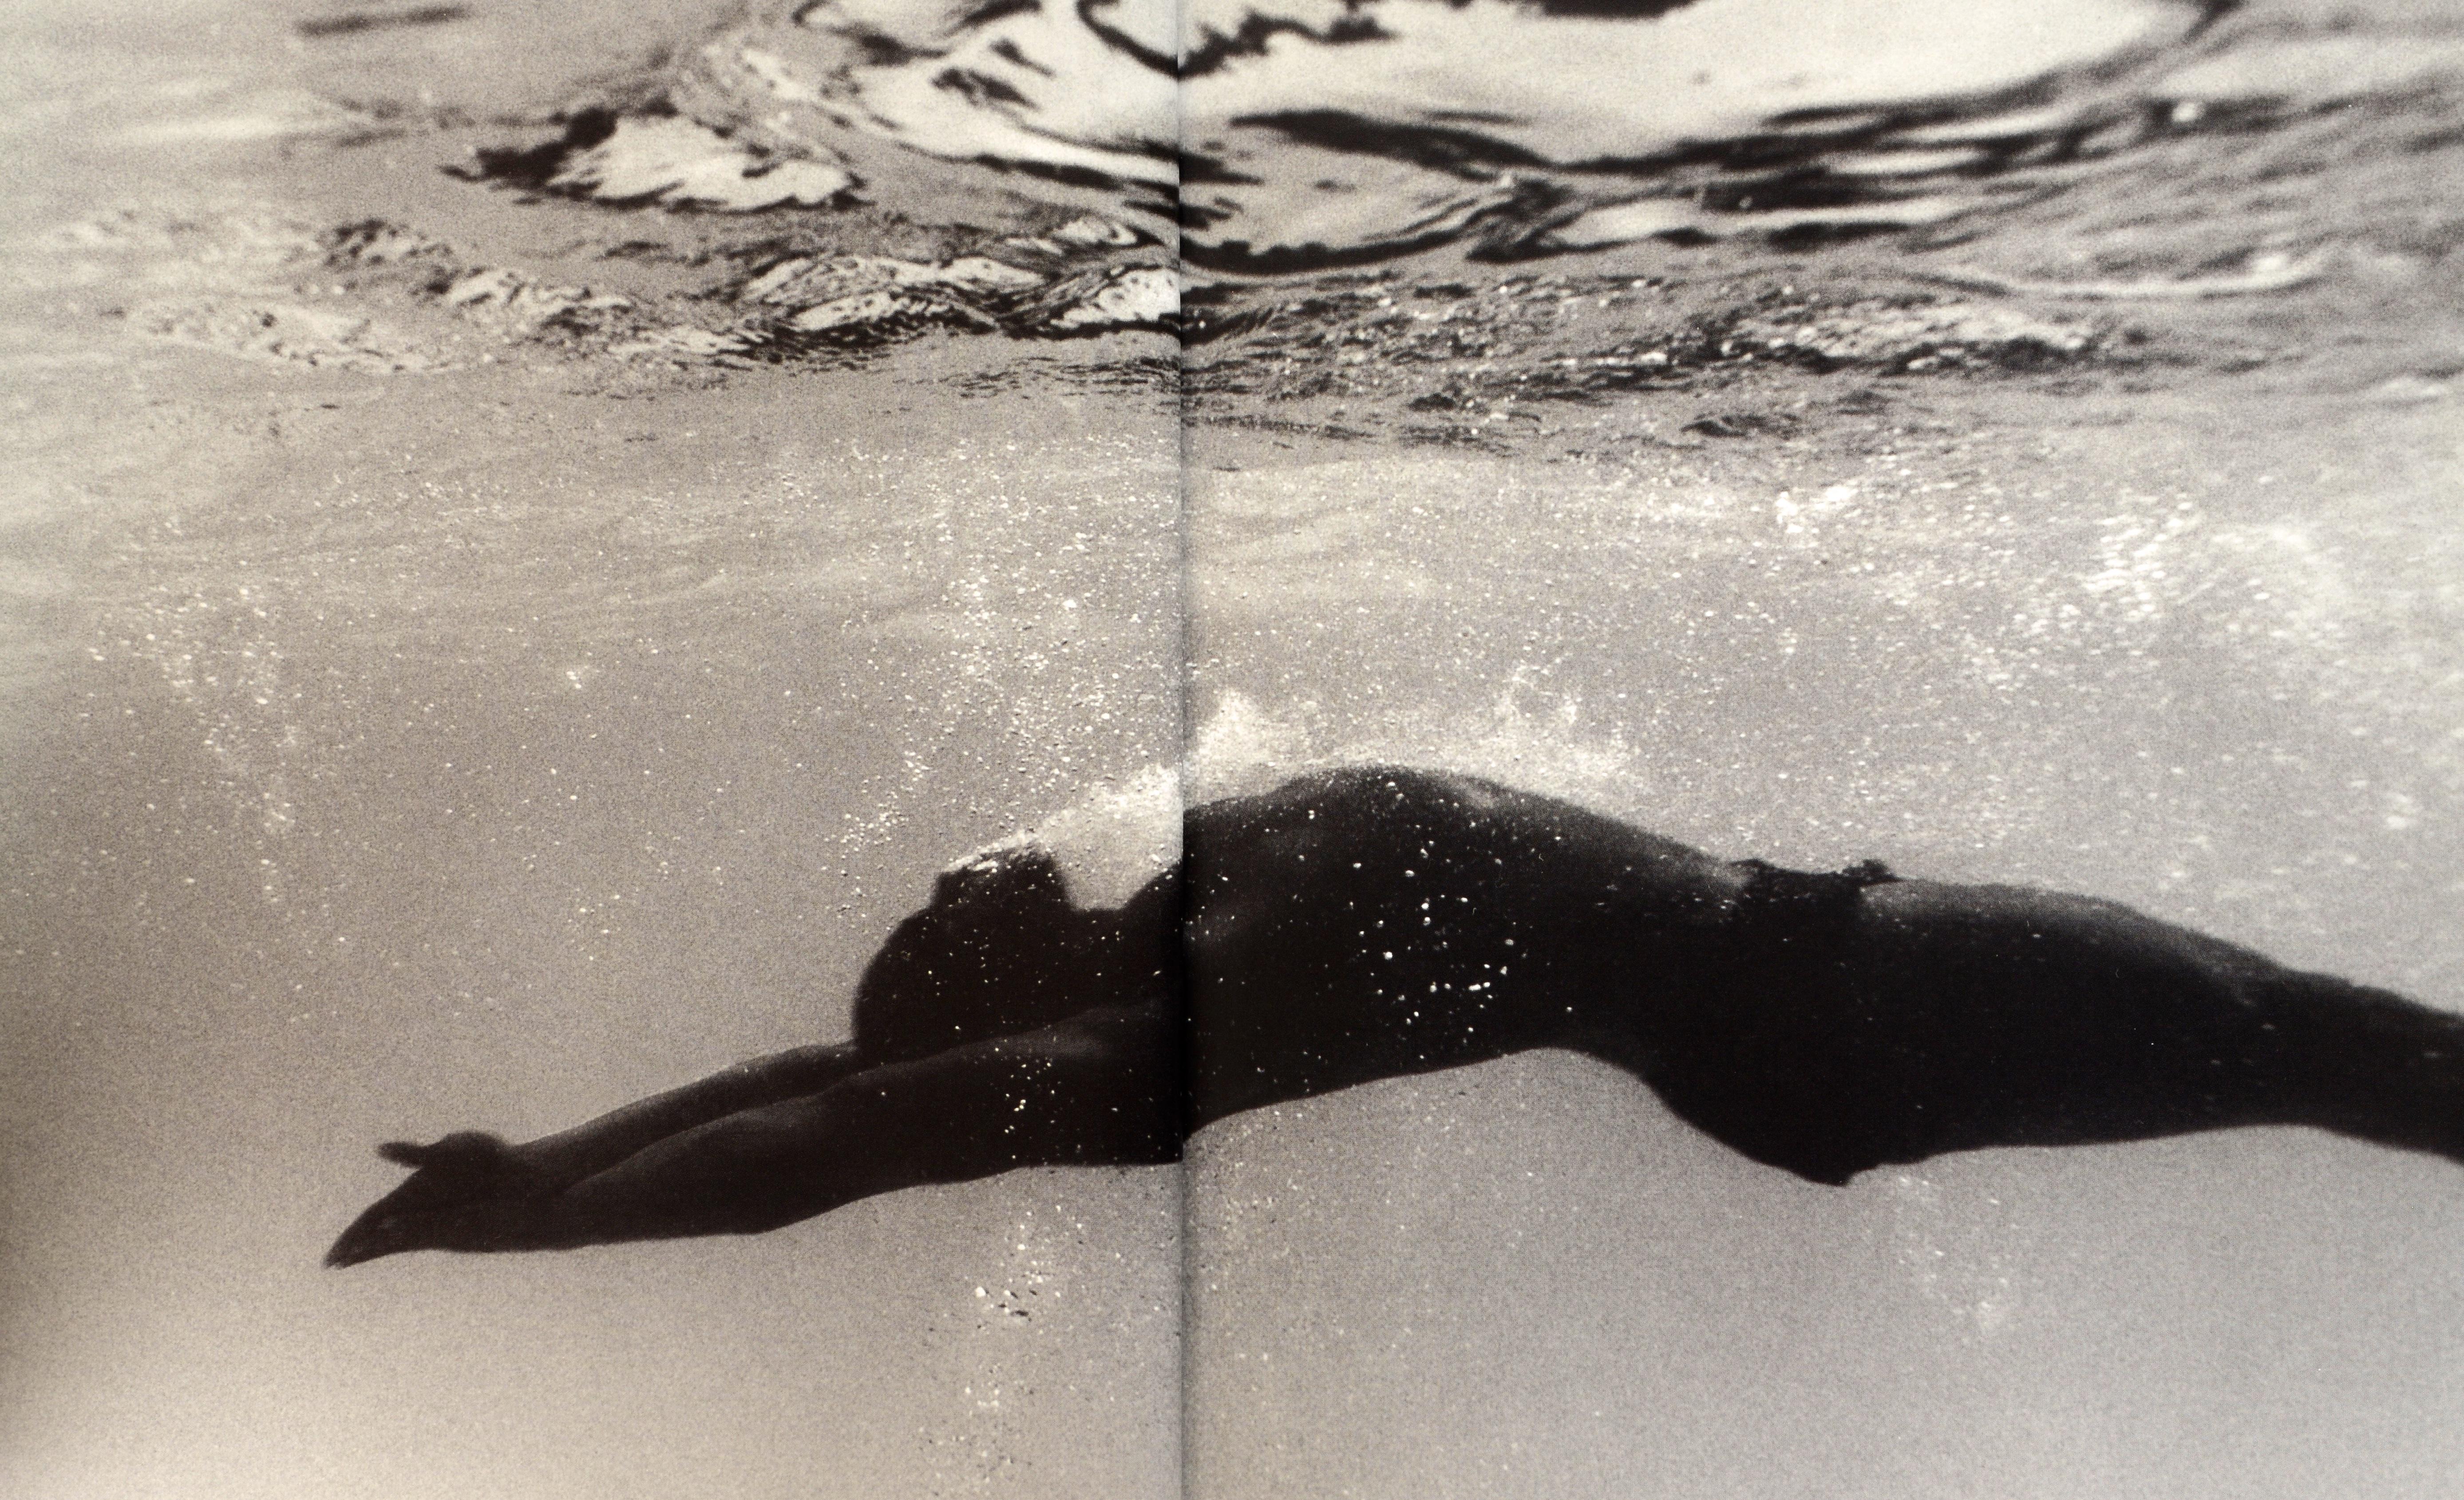 Portraits olympiques d'Annie Leibovitz. Boston, New York : Bullfinch, Little Brown, (1996). Couverture rigide de la 1ère édition. Les portraits saisissants de son livre comprennent une double page de groupe des femmes dont l'équipe est entrée dans